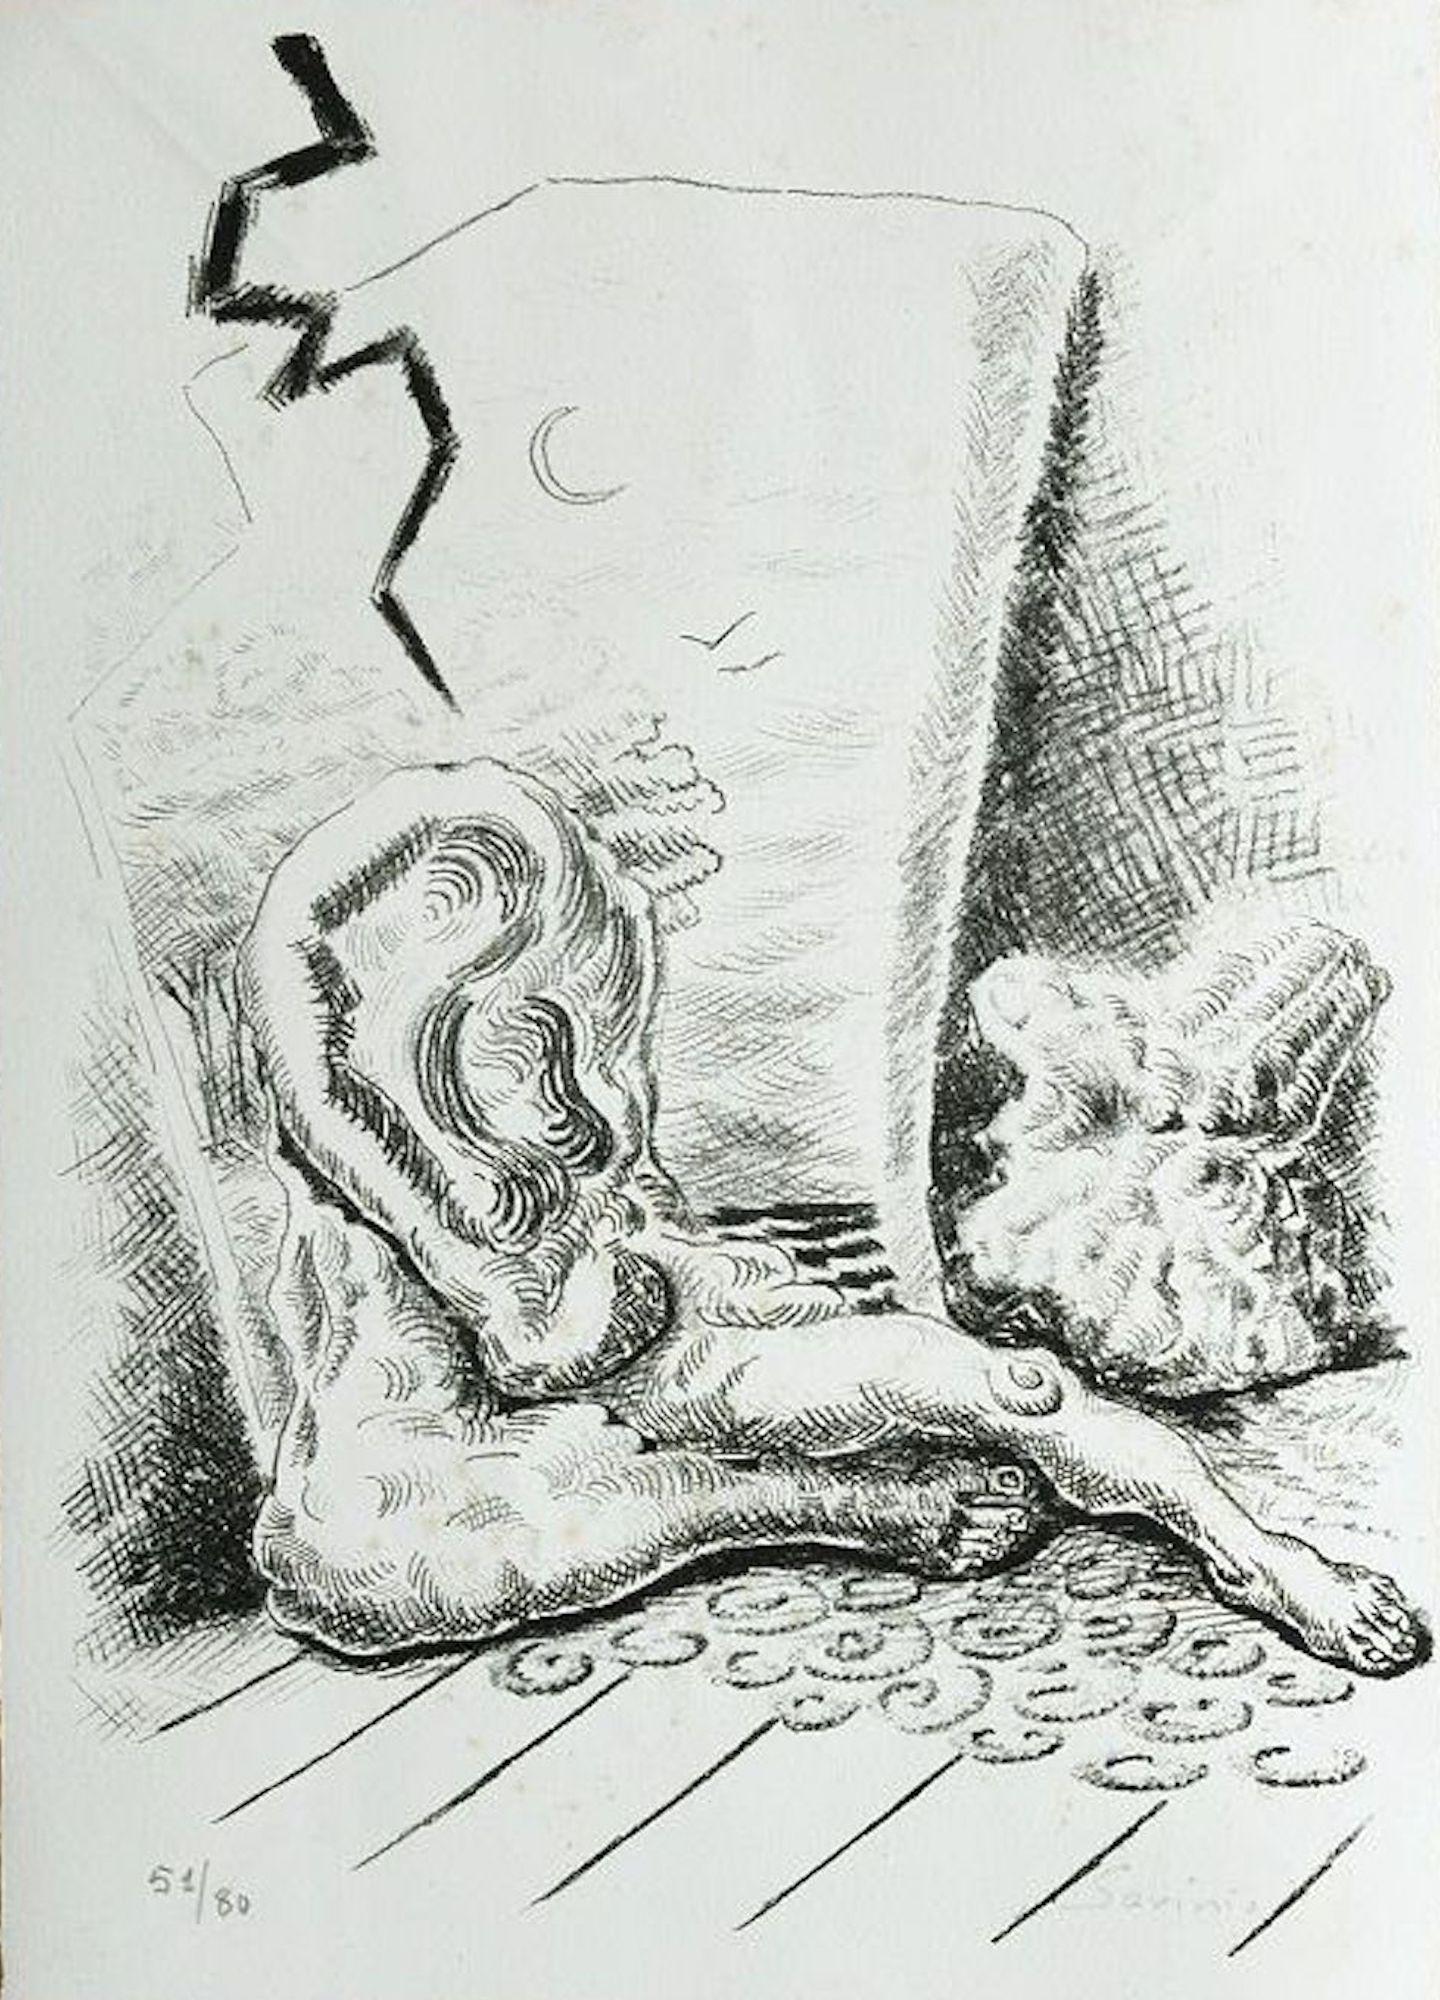 Alberto Savinio Figurative Print - The man in the Well - Original Lithograph by A. Savinio - 1946